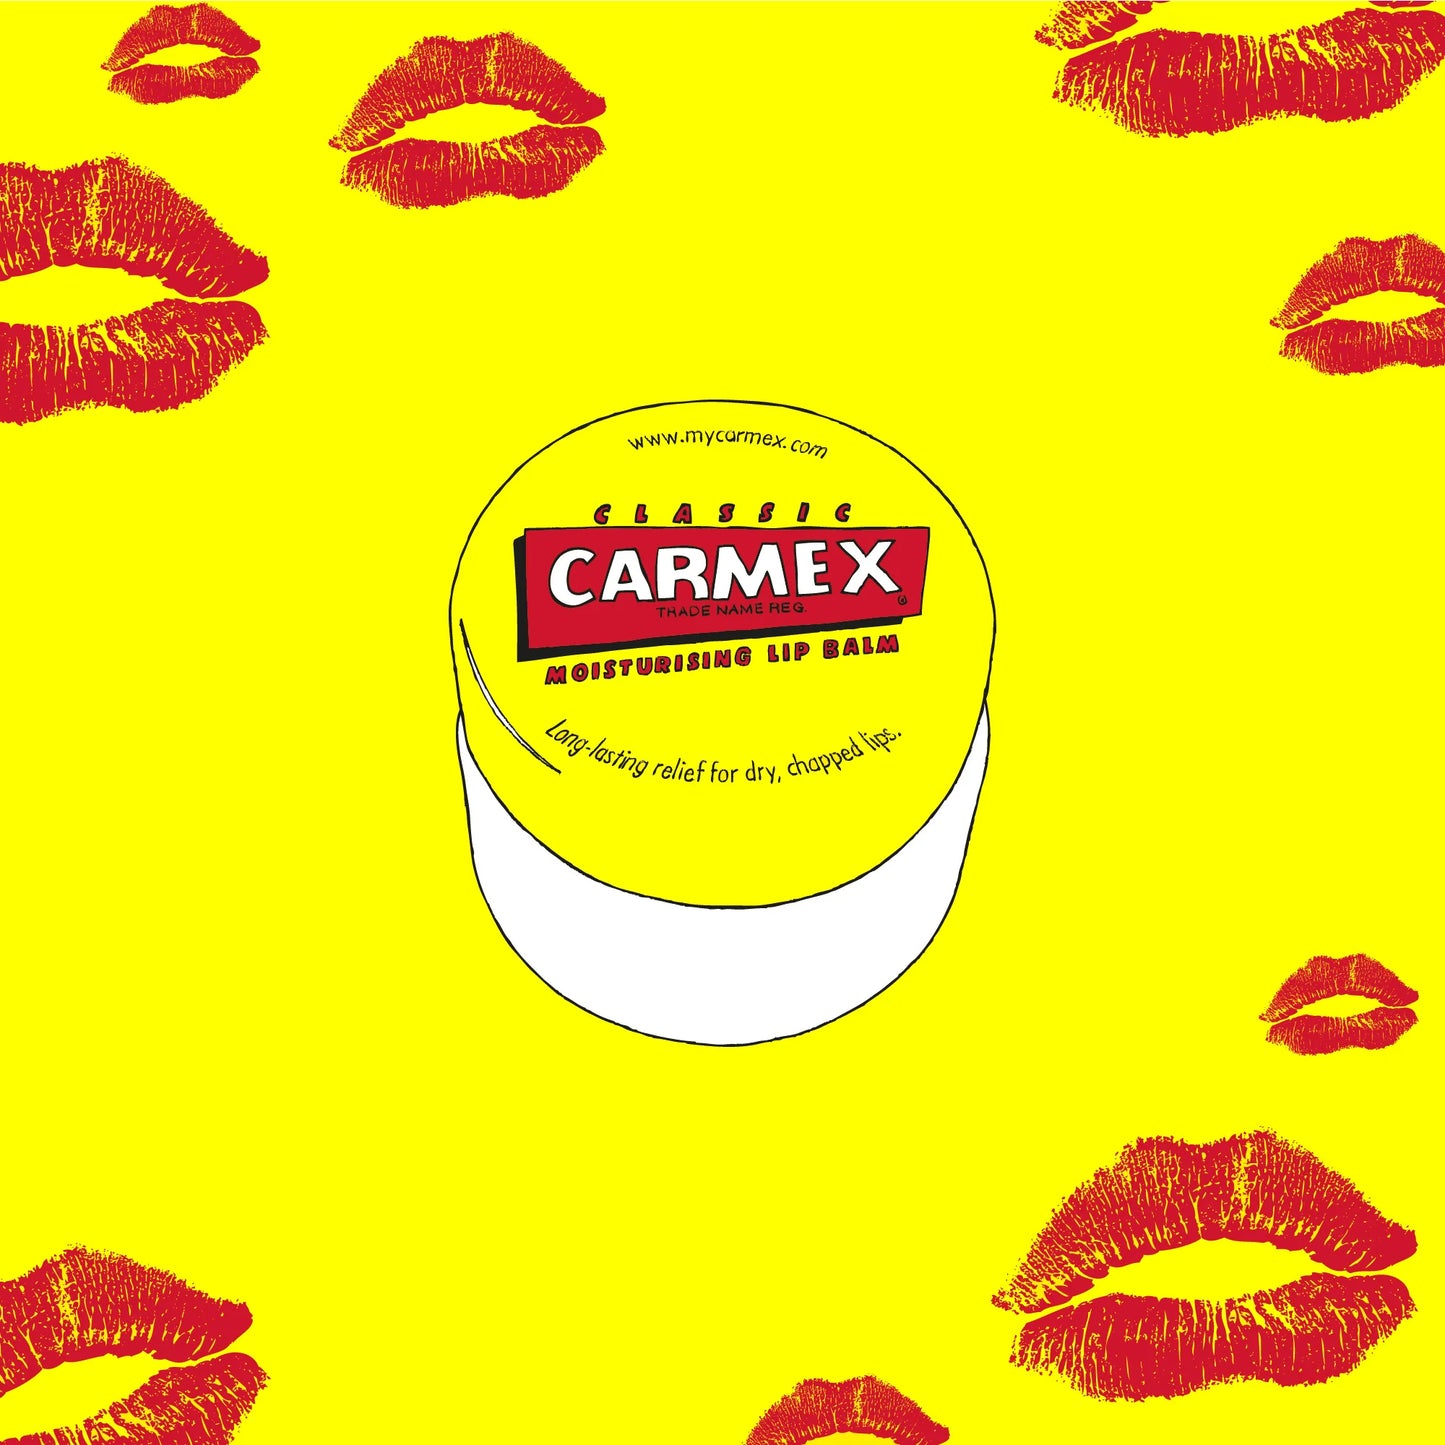 CARMEX Original Lip Balm Pot